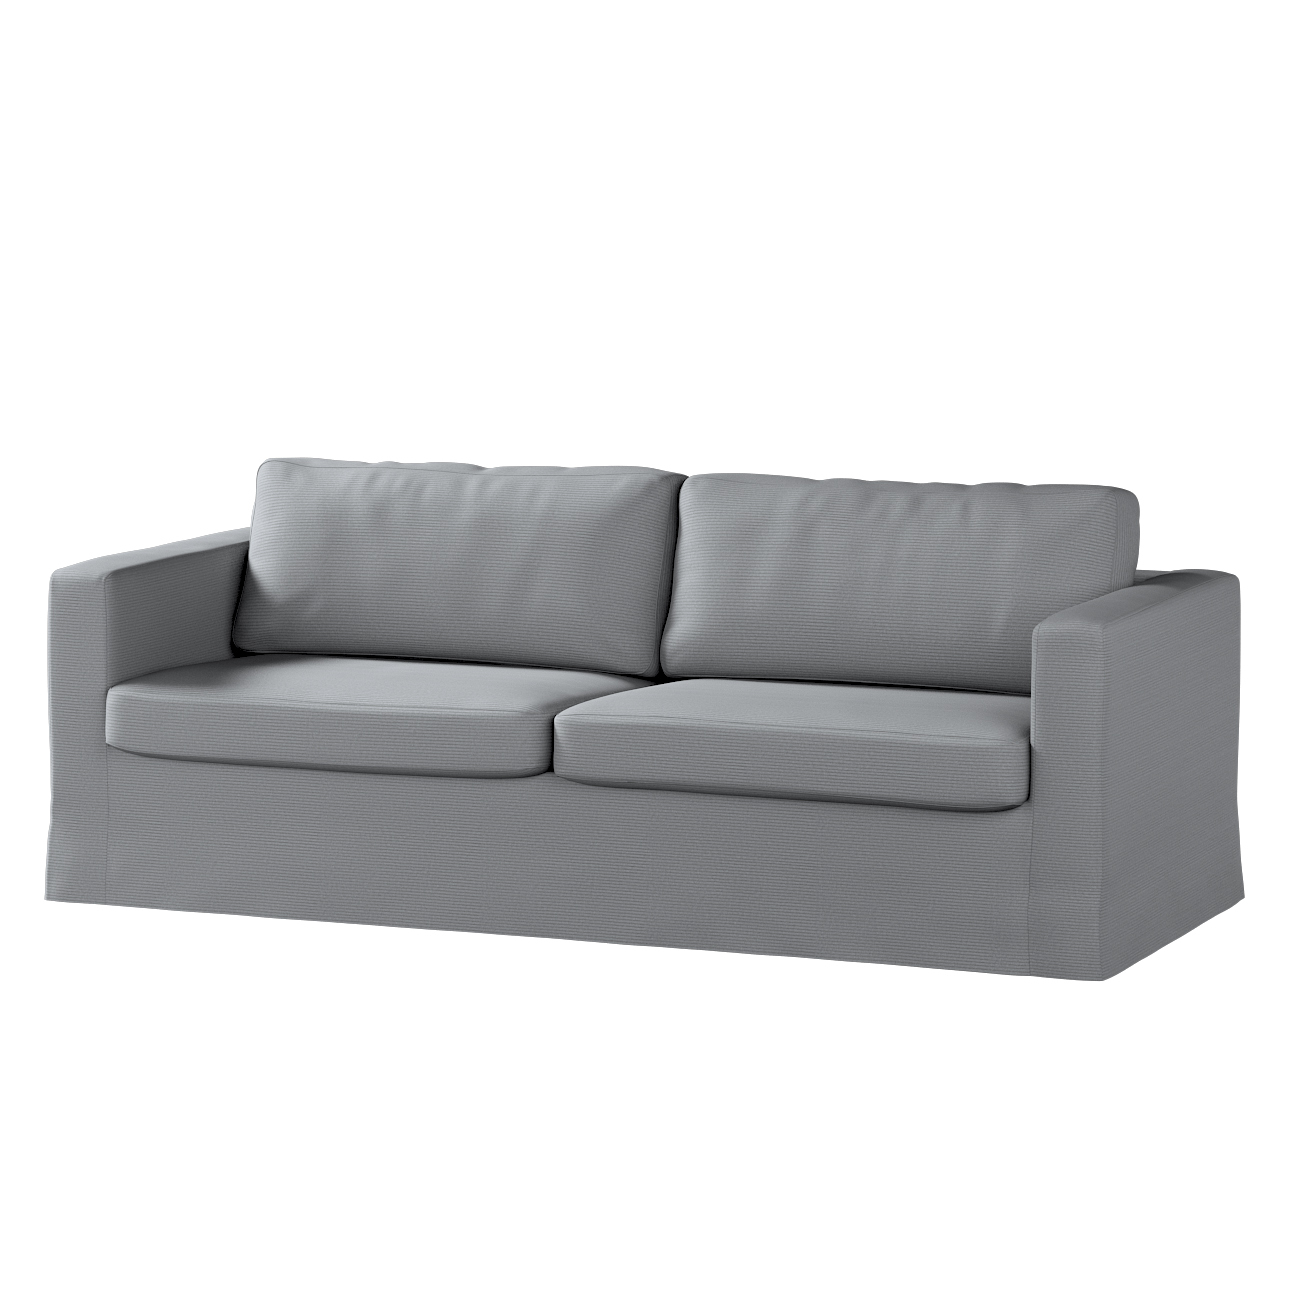 Bezug für Karlstad 3-Sitzer Sofa nicht ausklappbar, lang, hellgrau, Bezug f günstig online kaufen